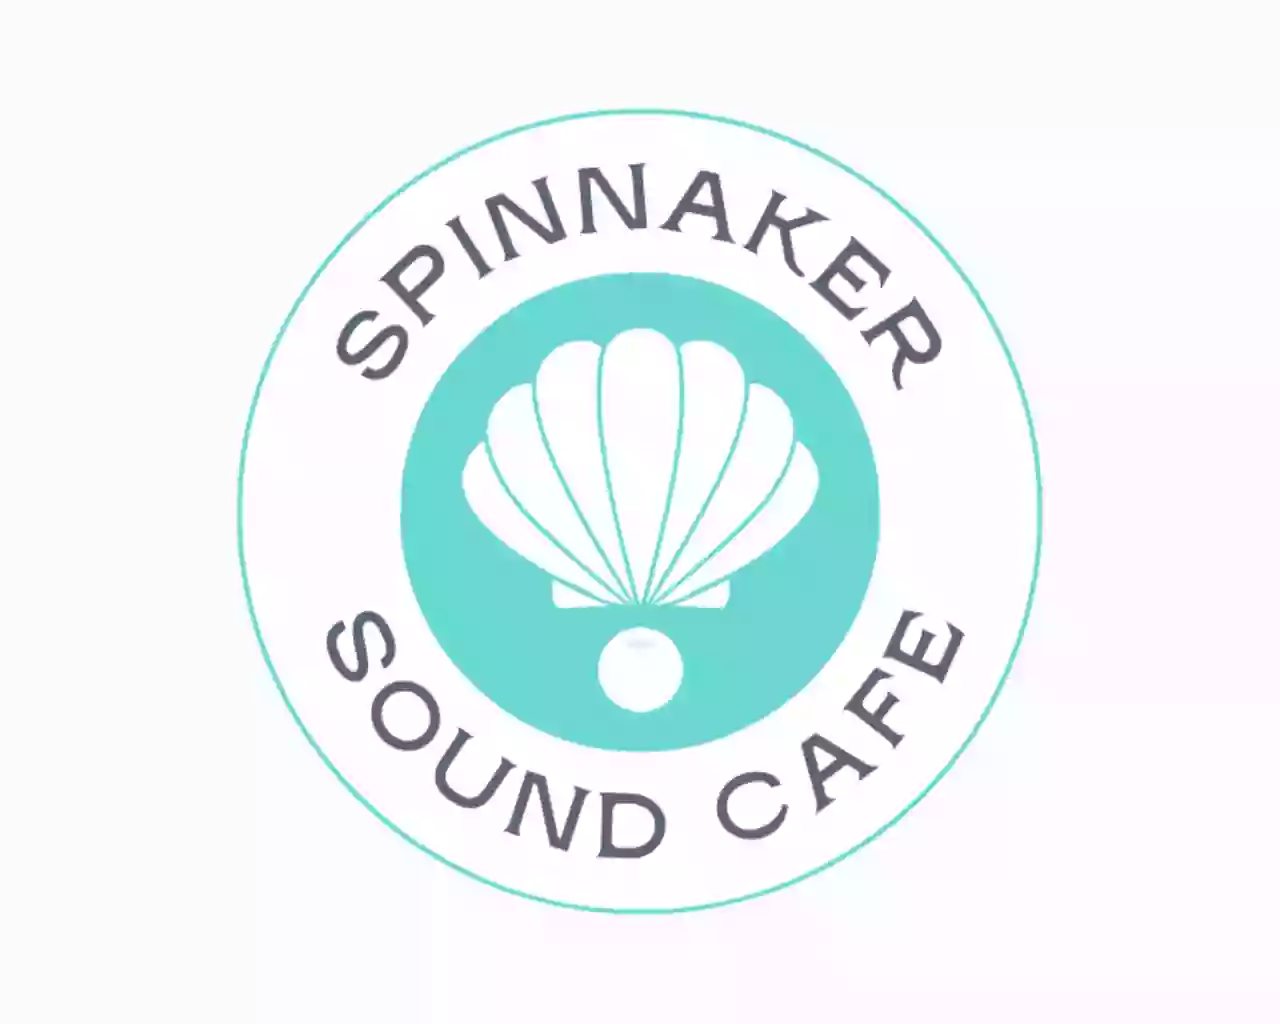 Spinnaker Sound Cafe